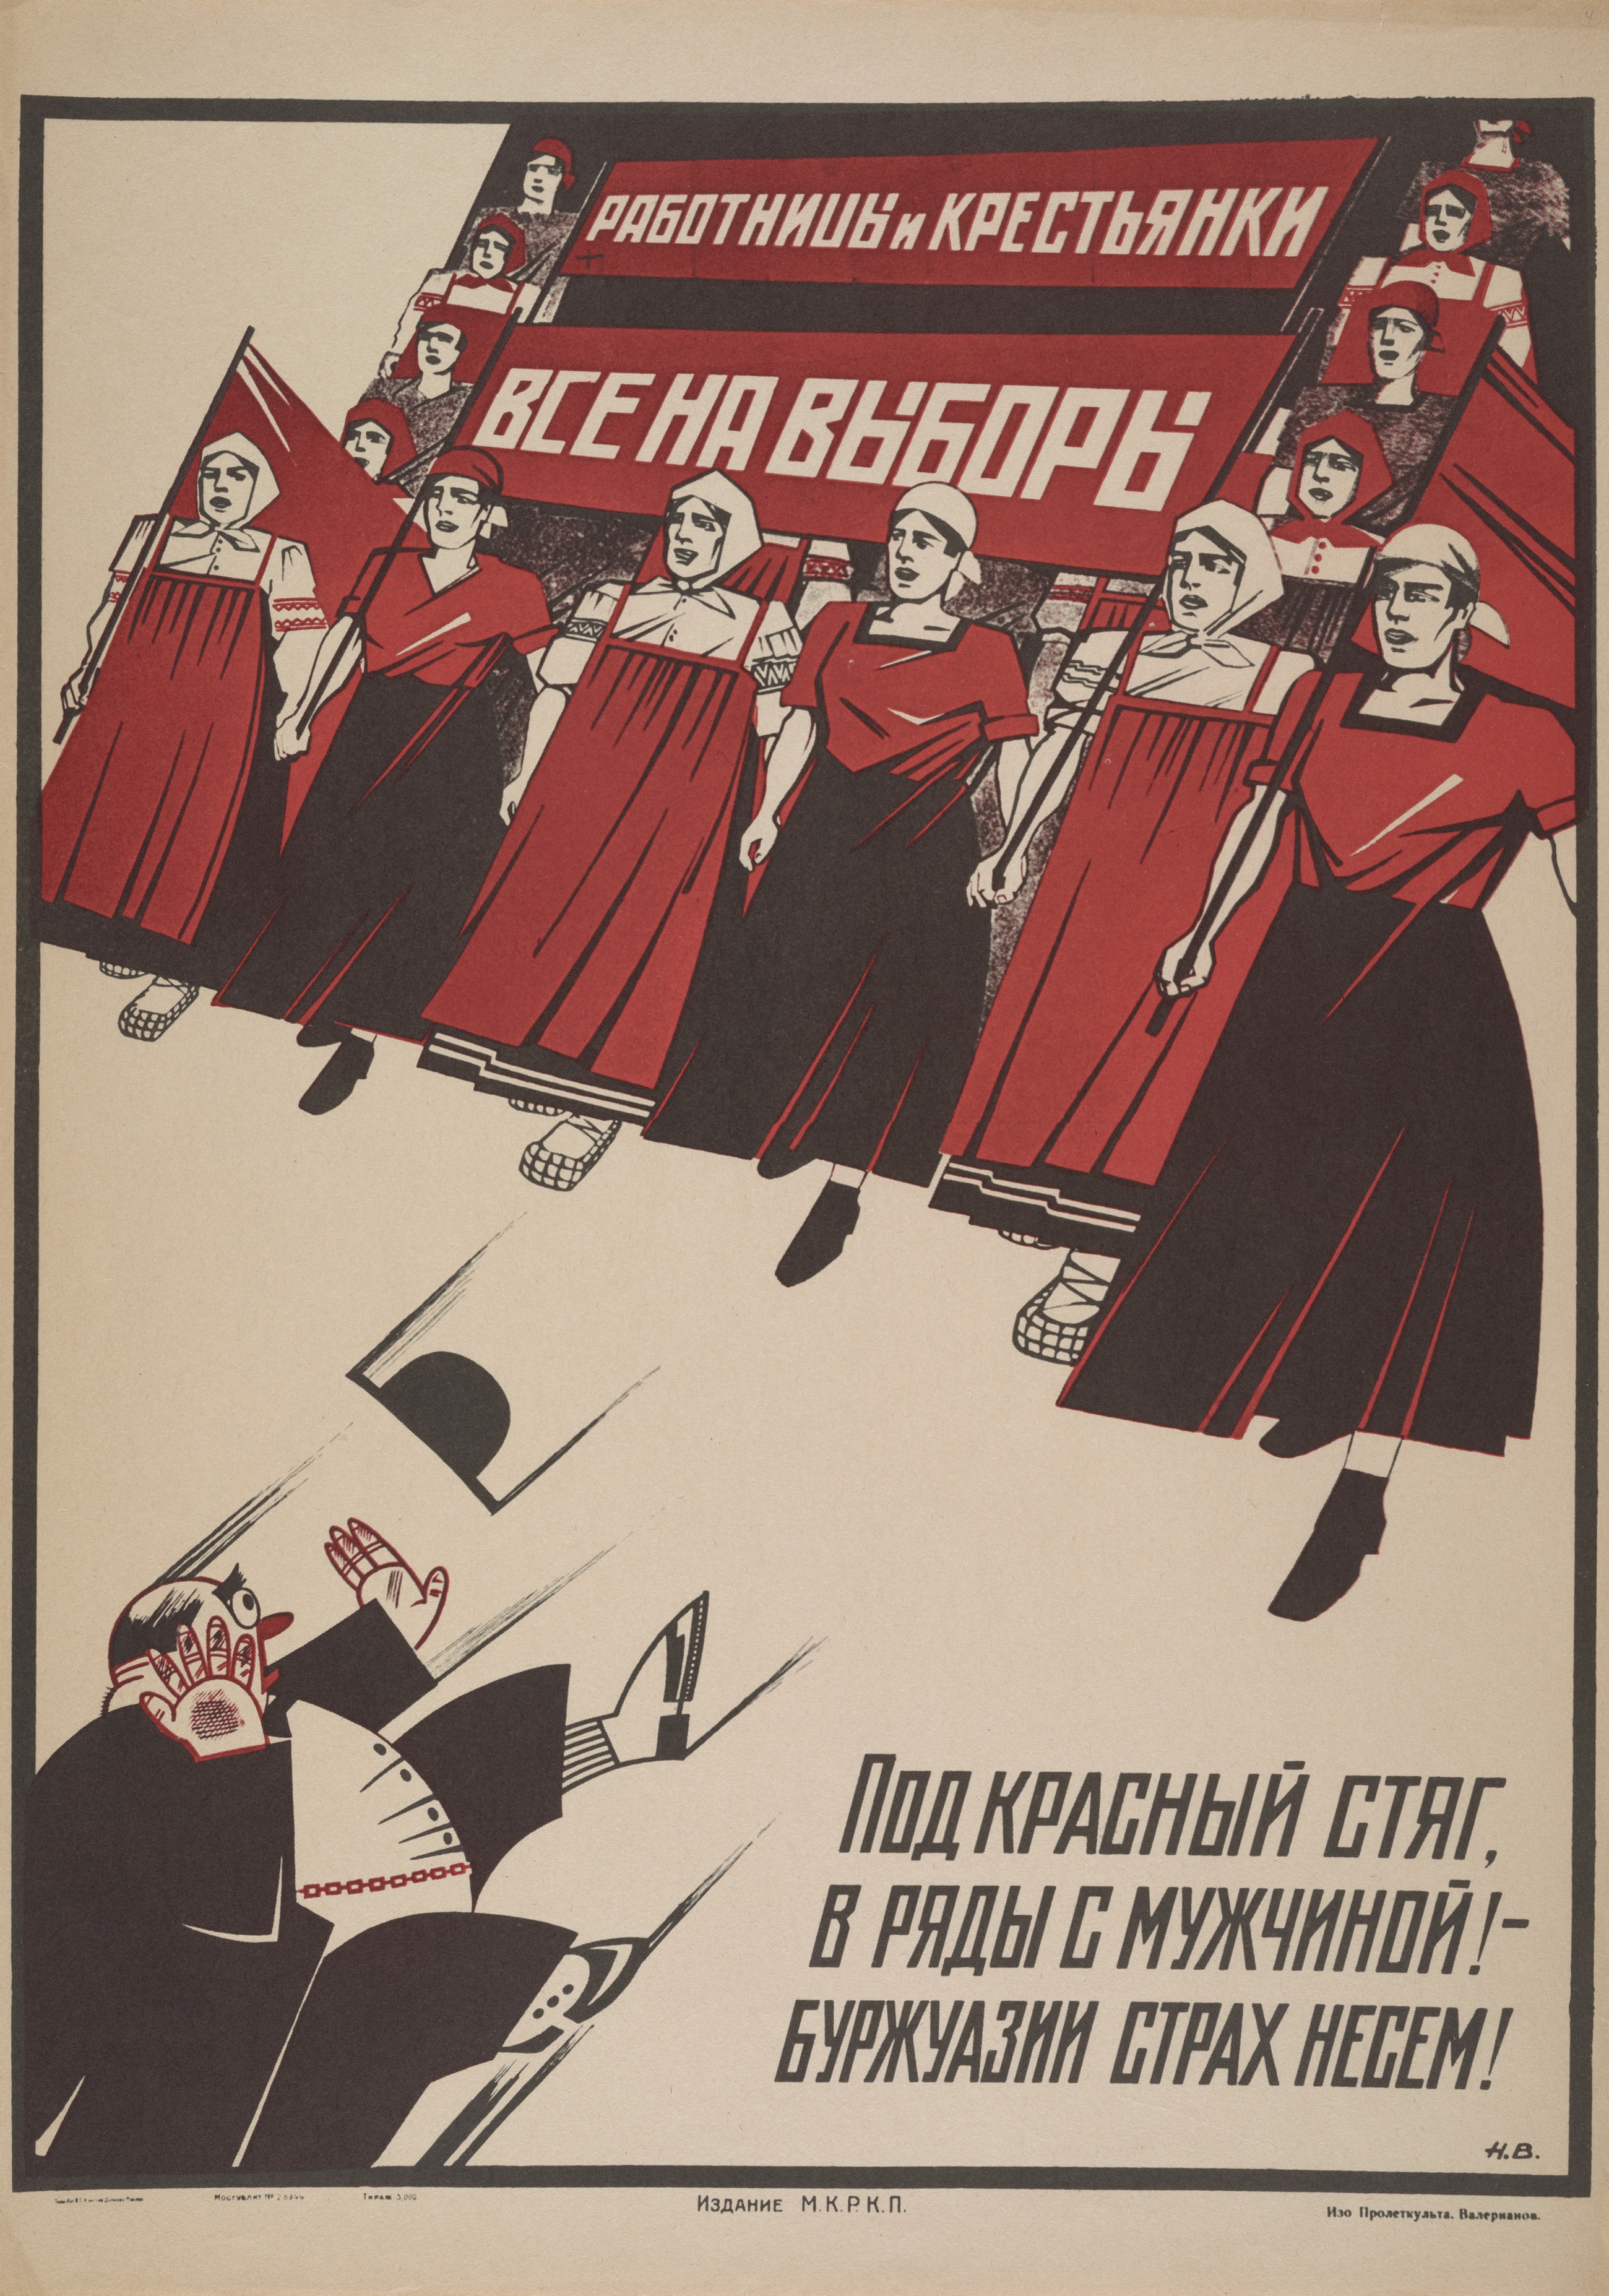  Работницы и крестьянки, все на выборы Автор: Н. Валерианов Год: 1925